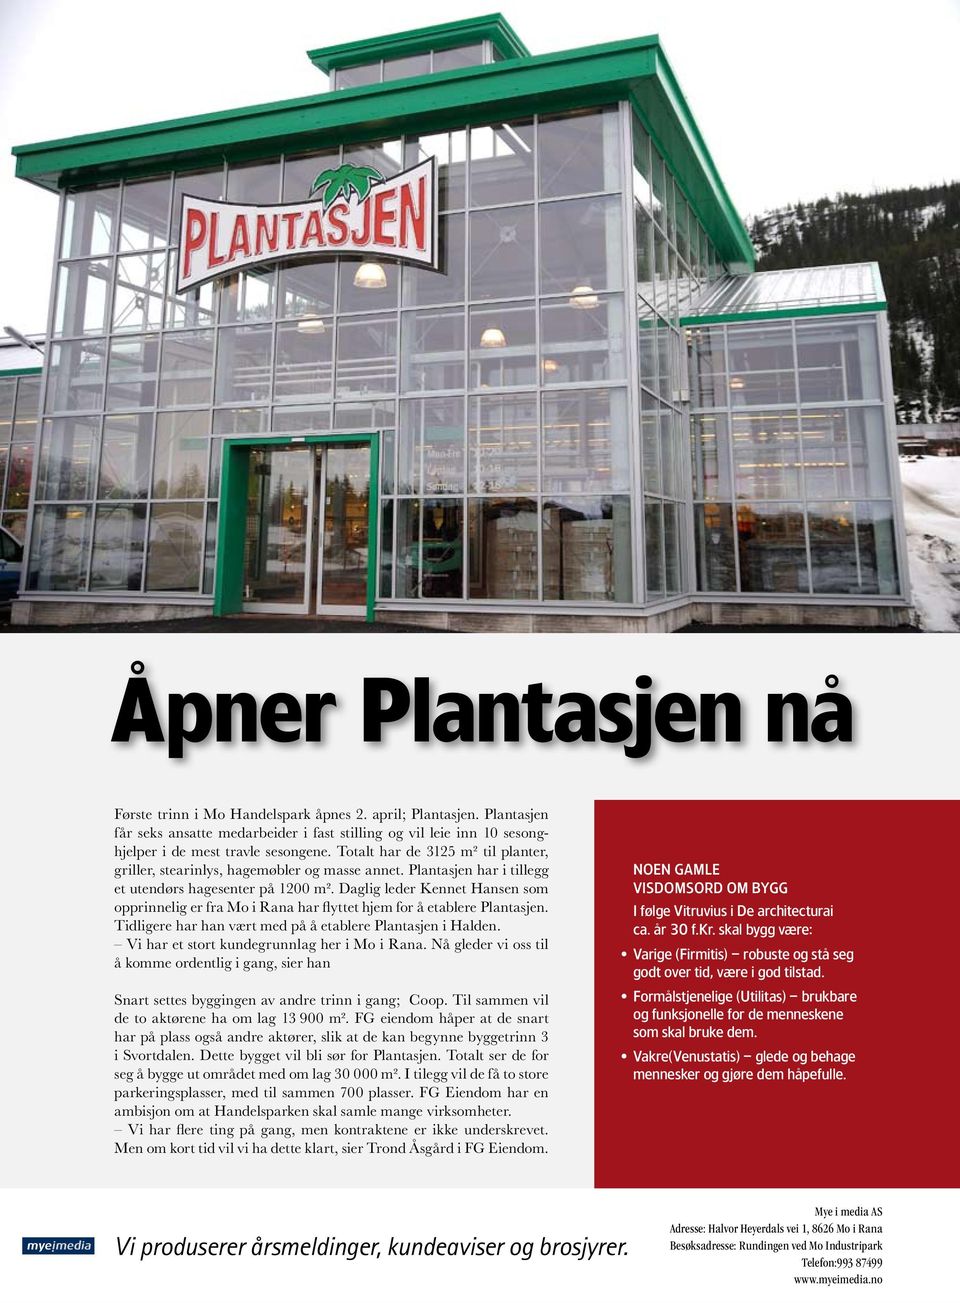 Plantasjen har i tillegg et utendørs hagesenter på 1200 m². Daglig leder Kennet Hansen som opprinnelig er fra Mo i Rana har flyttet hjem for å etablere Plantasjen.